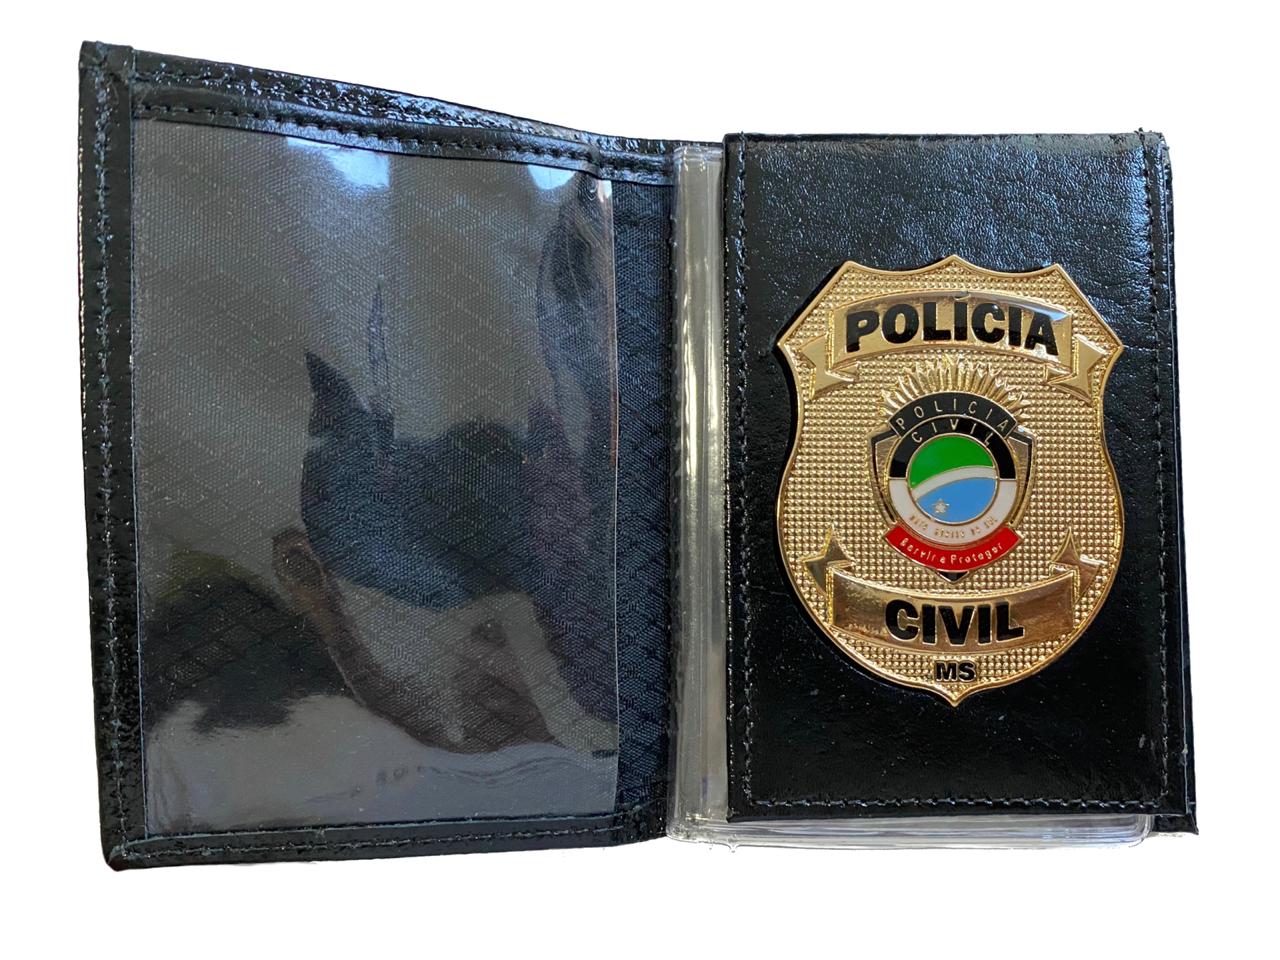 POLÍCIA CIVIL MATO GROSSO DO SUL - PCMS NOVO BRASÃO - SOUPOLICIA.COM